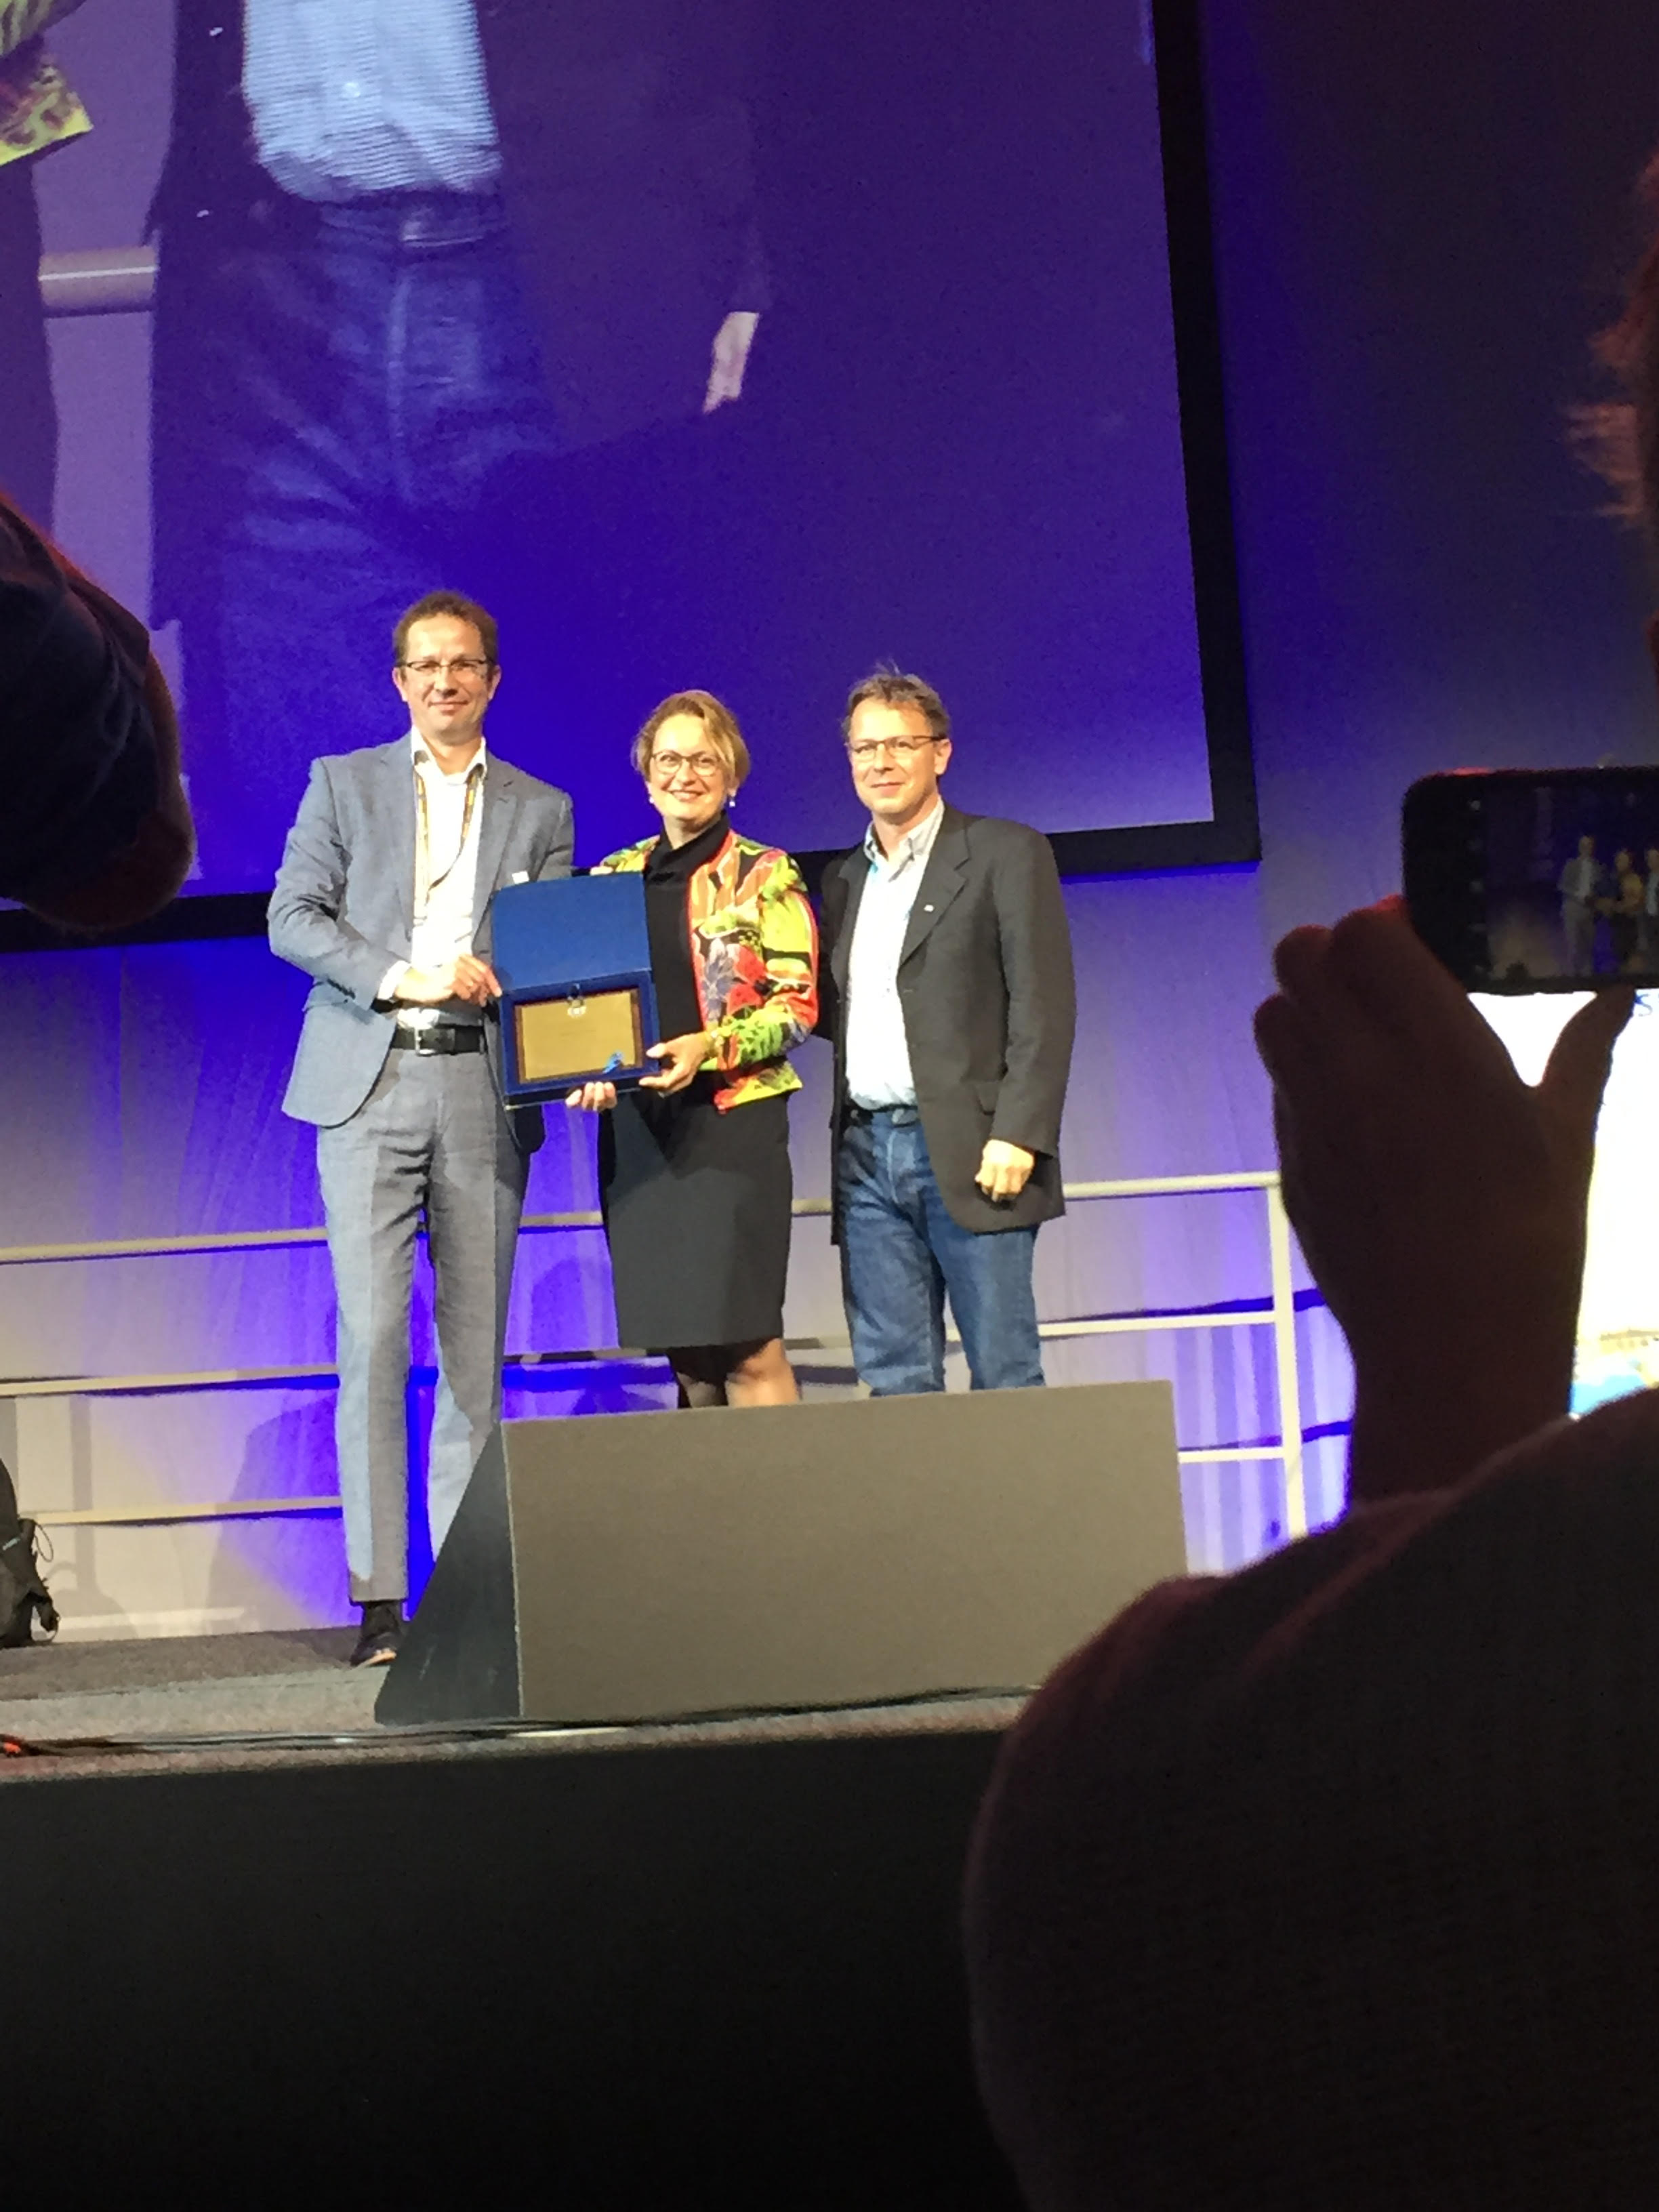 Wijmenga ontving haar prijs op dinsdag 18 juni tijdens het ESHG-congres.Prof. dr. Cisca Wijmenga has been awarded the 2019 award of European Society of Human Genetics (ESHG).